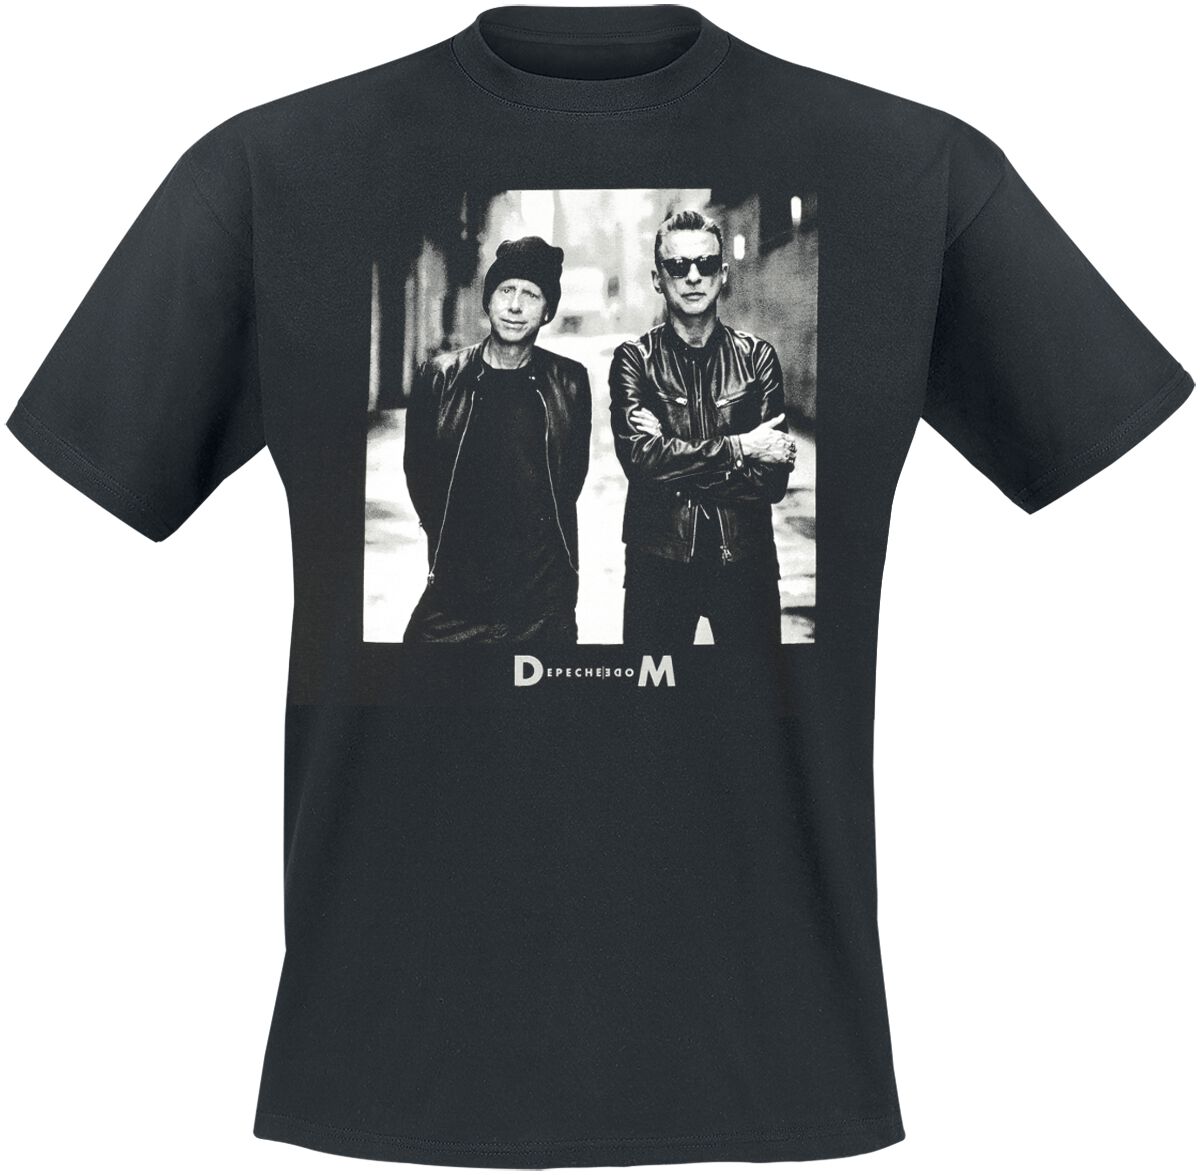 Depeche Mode T-Shirt - Alley Photo - S bis XL - für Männer - Größe XL - schwarz  - Lizenziertes Merchandise!